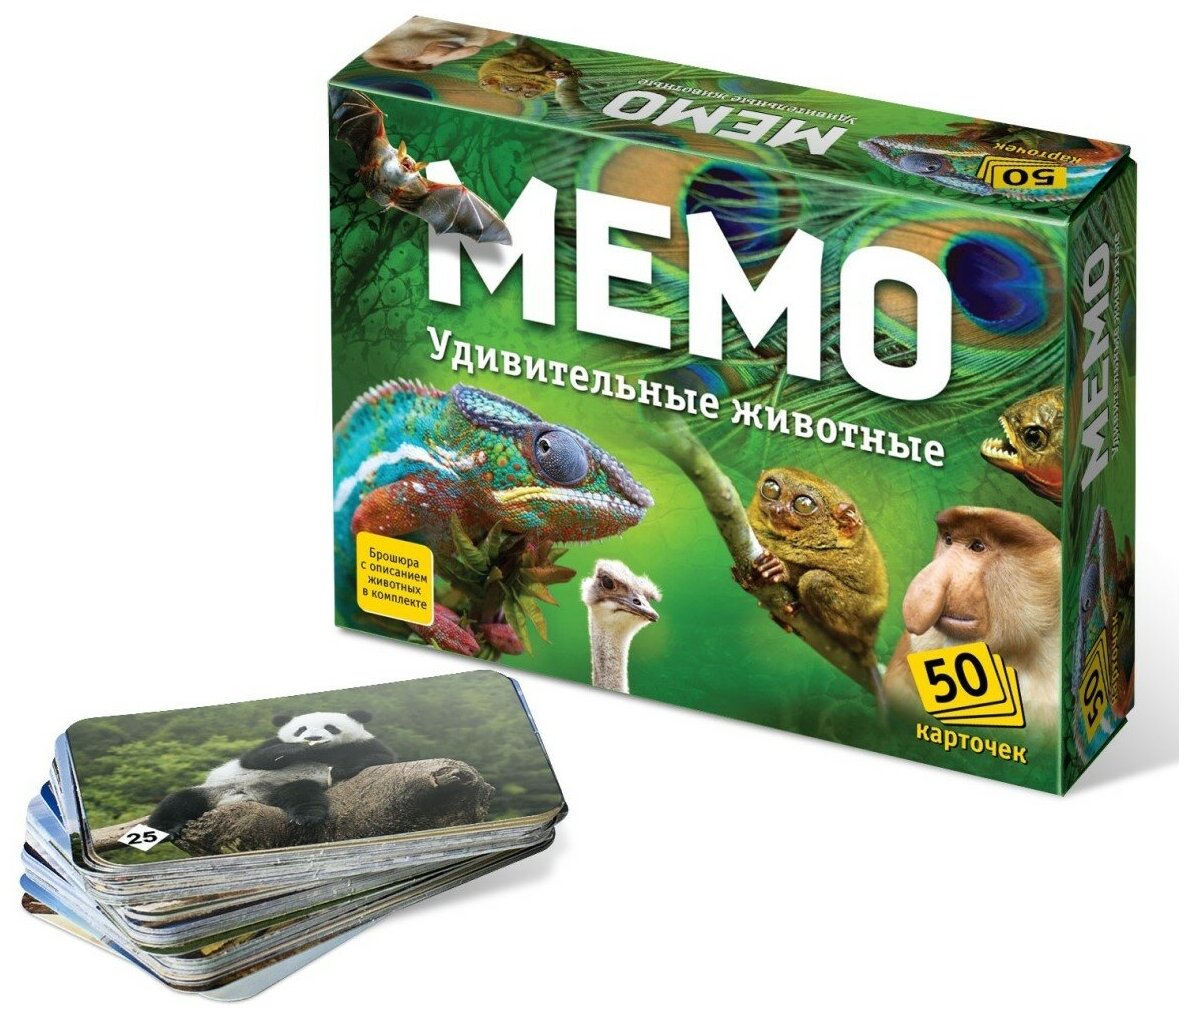 Настольные развивающие игры для детей для всей семьи Мемо "Удивительные животные" (50 карточек)